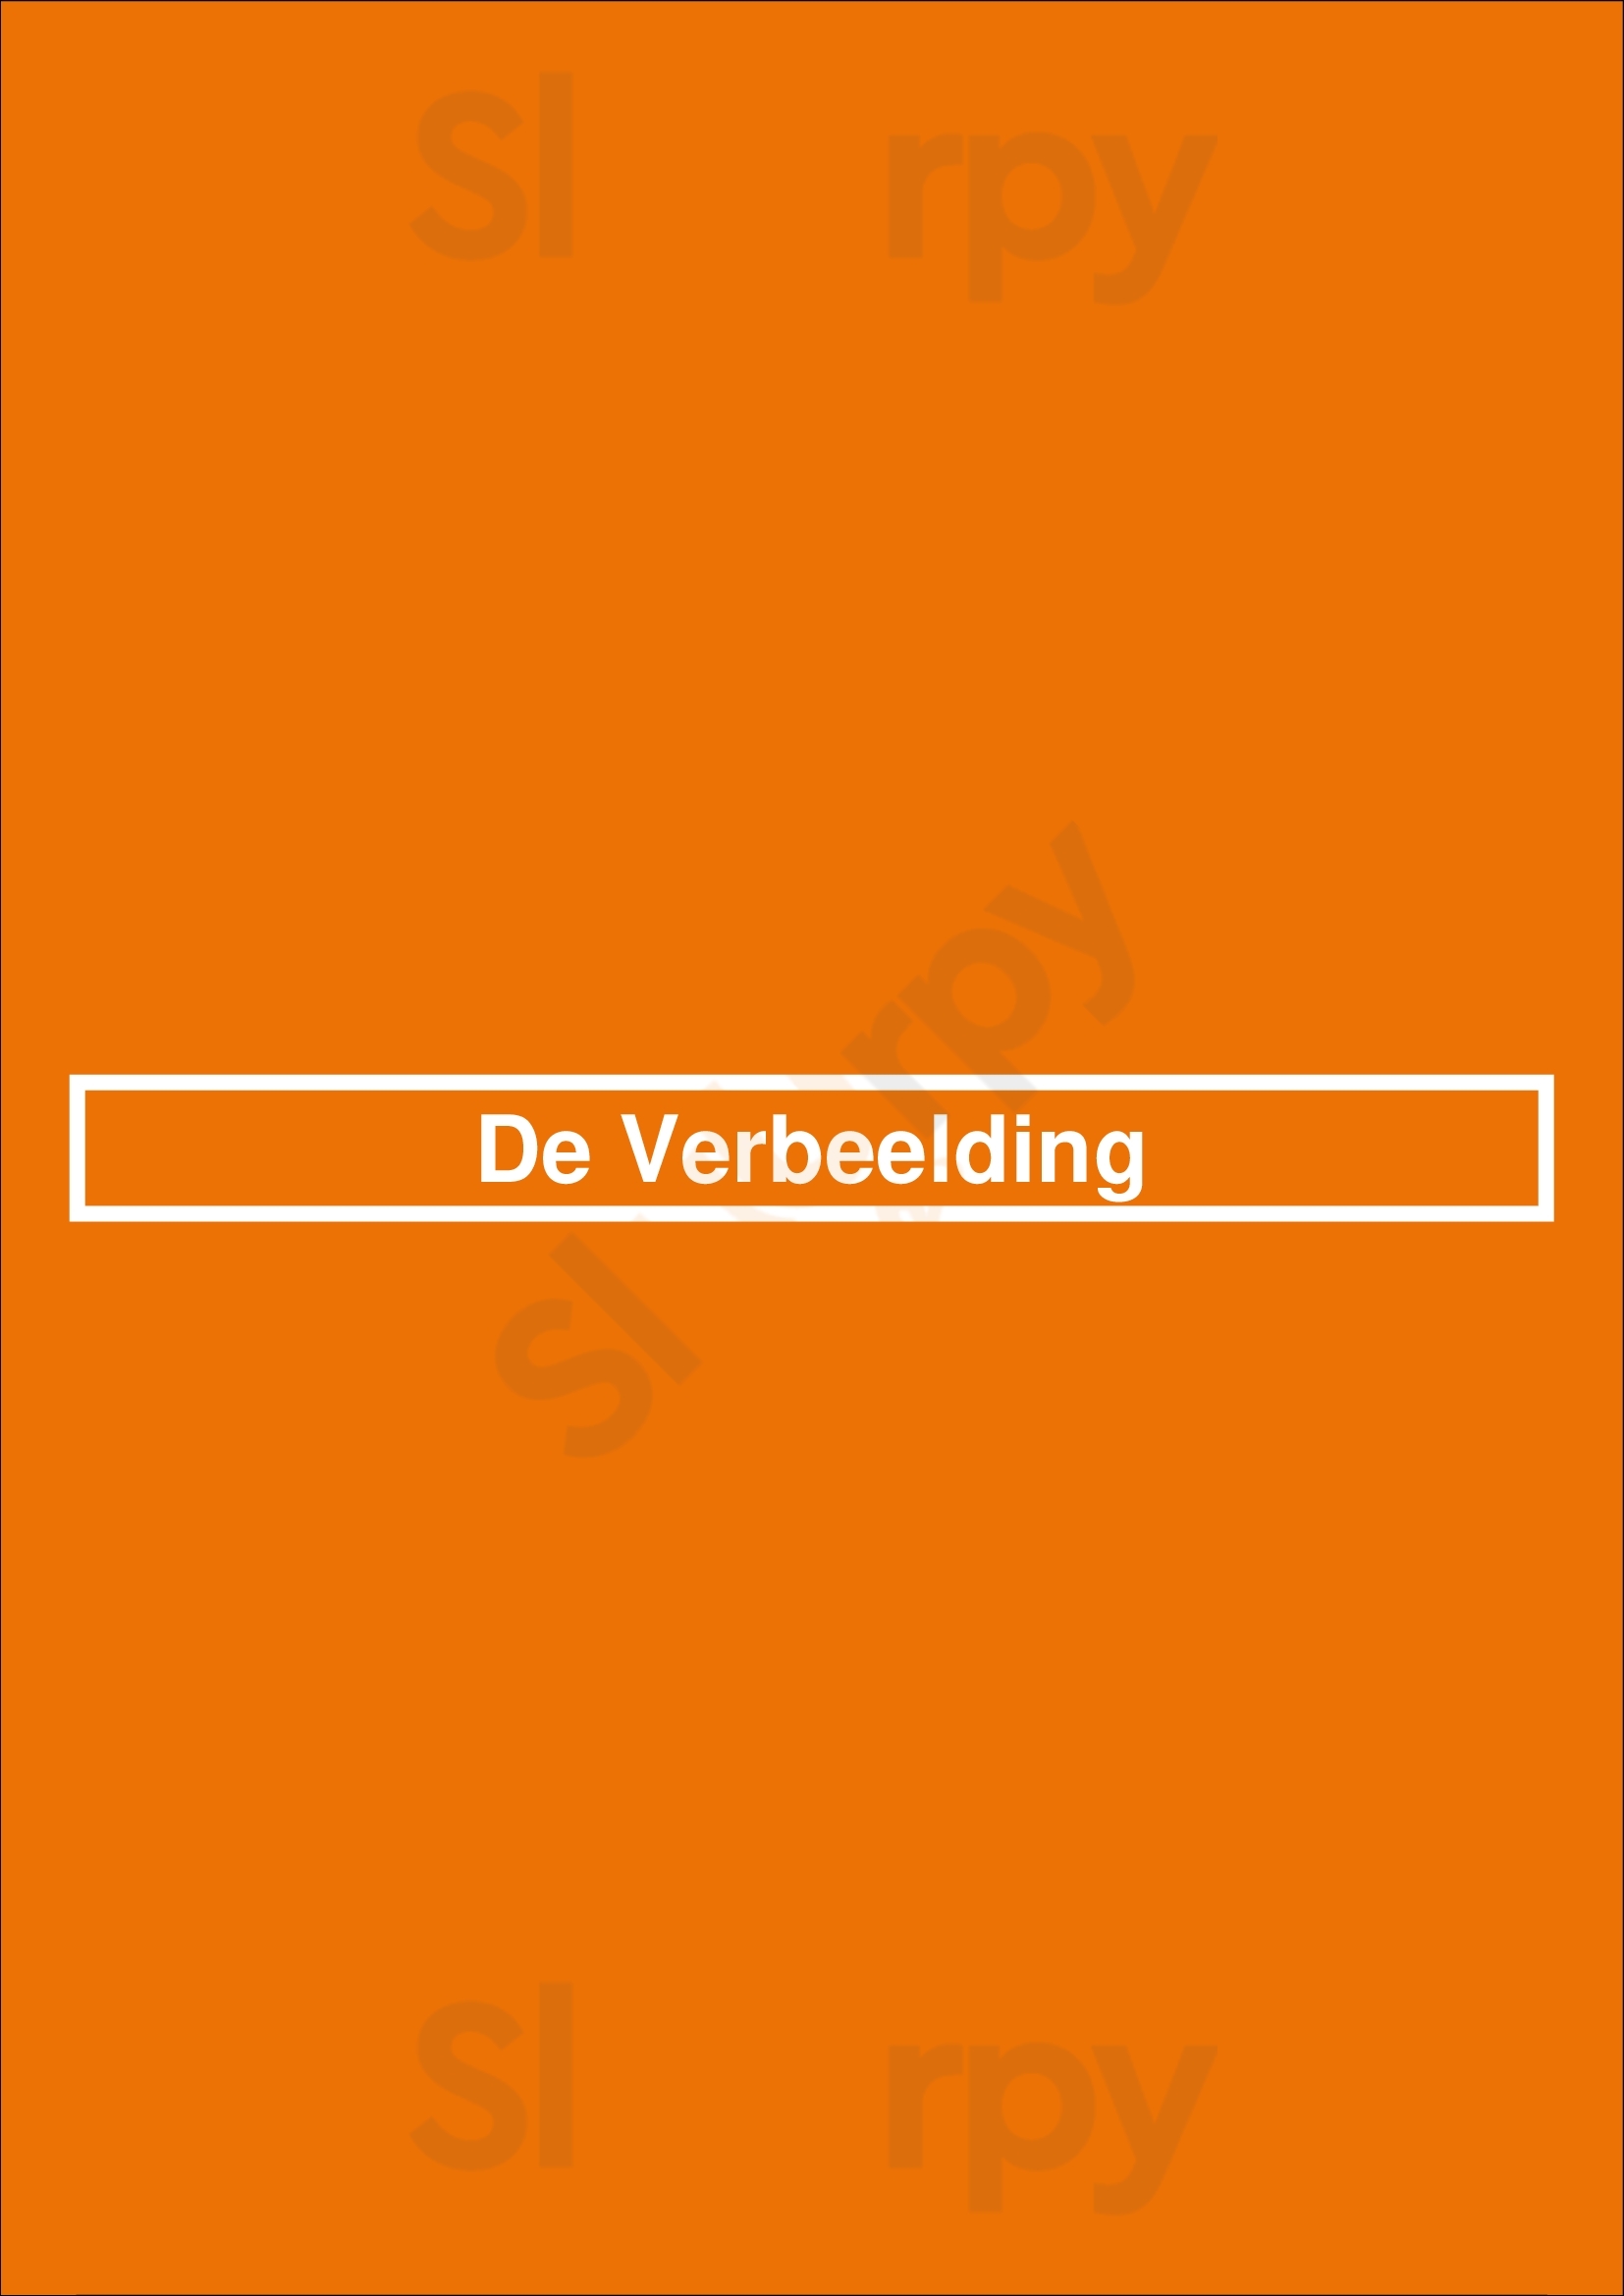 De Verbeelding Delft Menu - 1